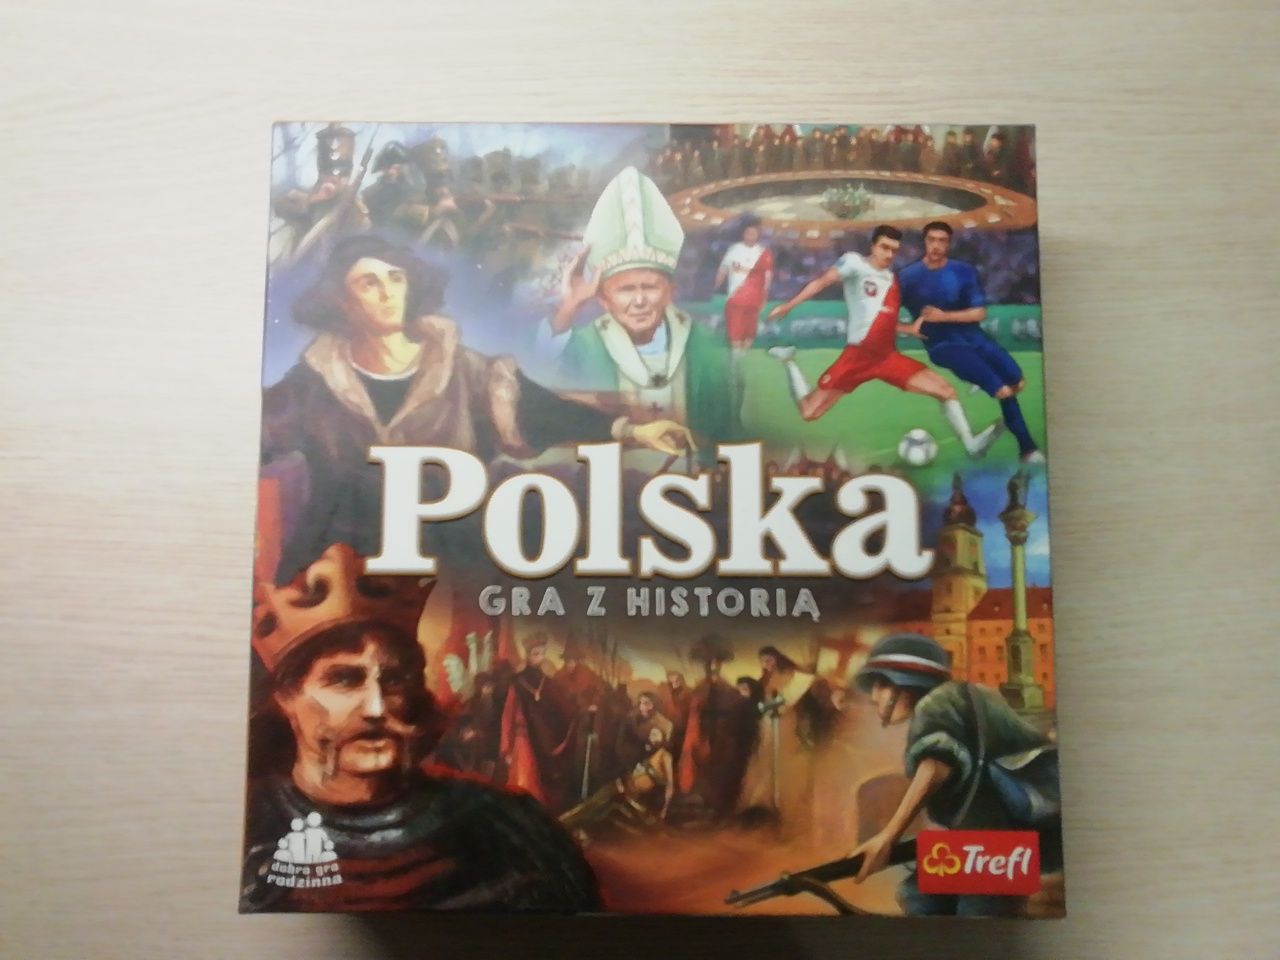 Gra planszowa "Polska gra z historią"